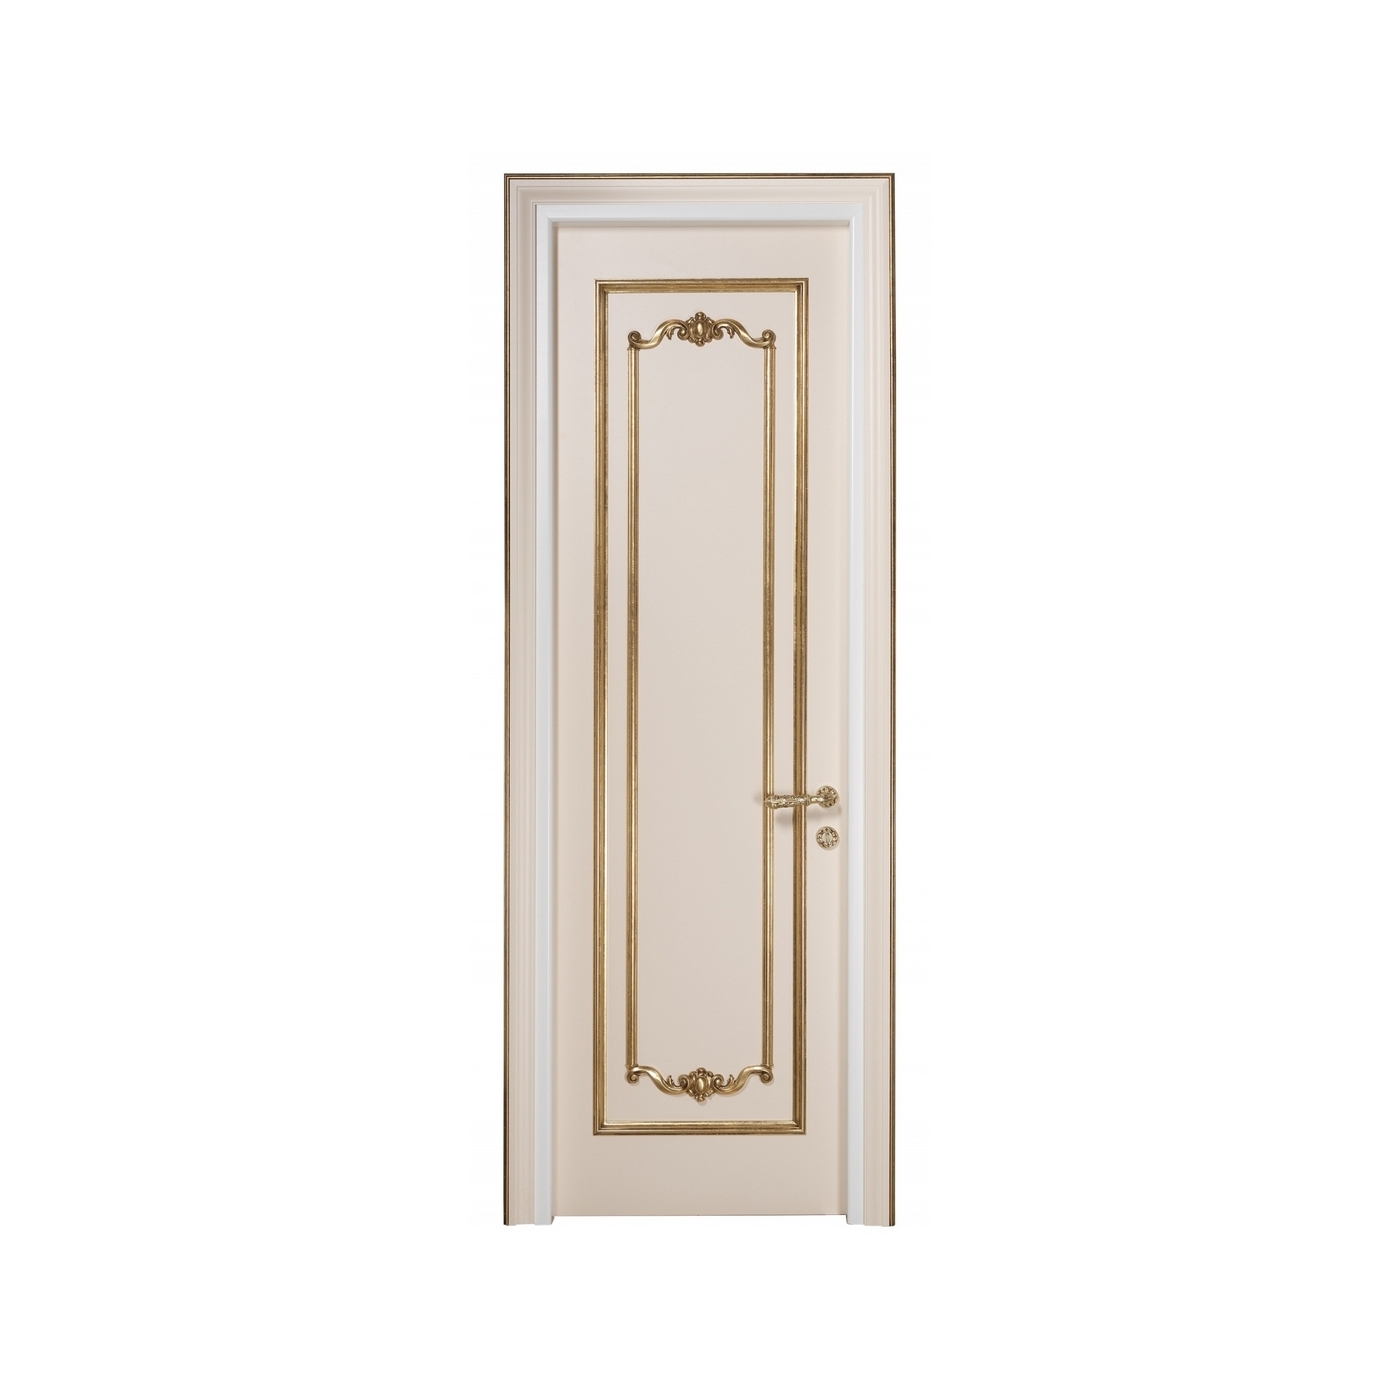 Дверь, стиль классический, дизайн Sige Gold, модель Goldie Collection GD656SP.1A.RRR